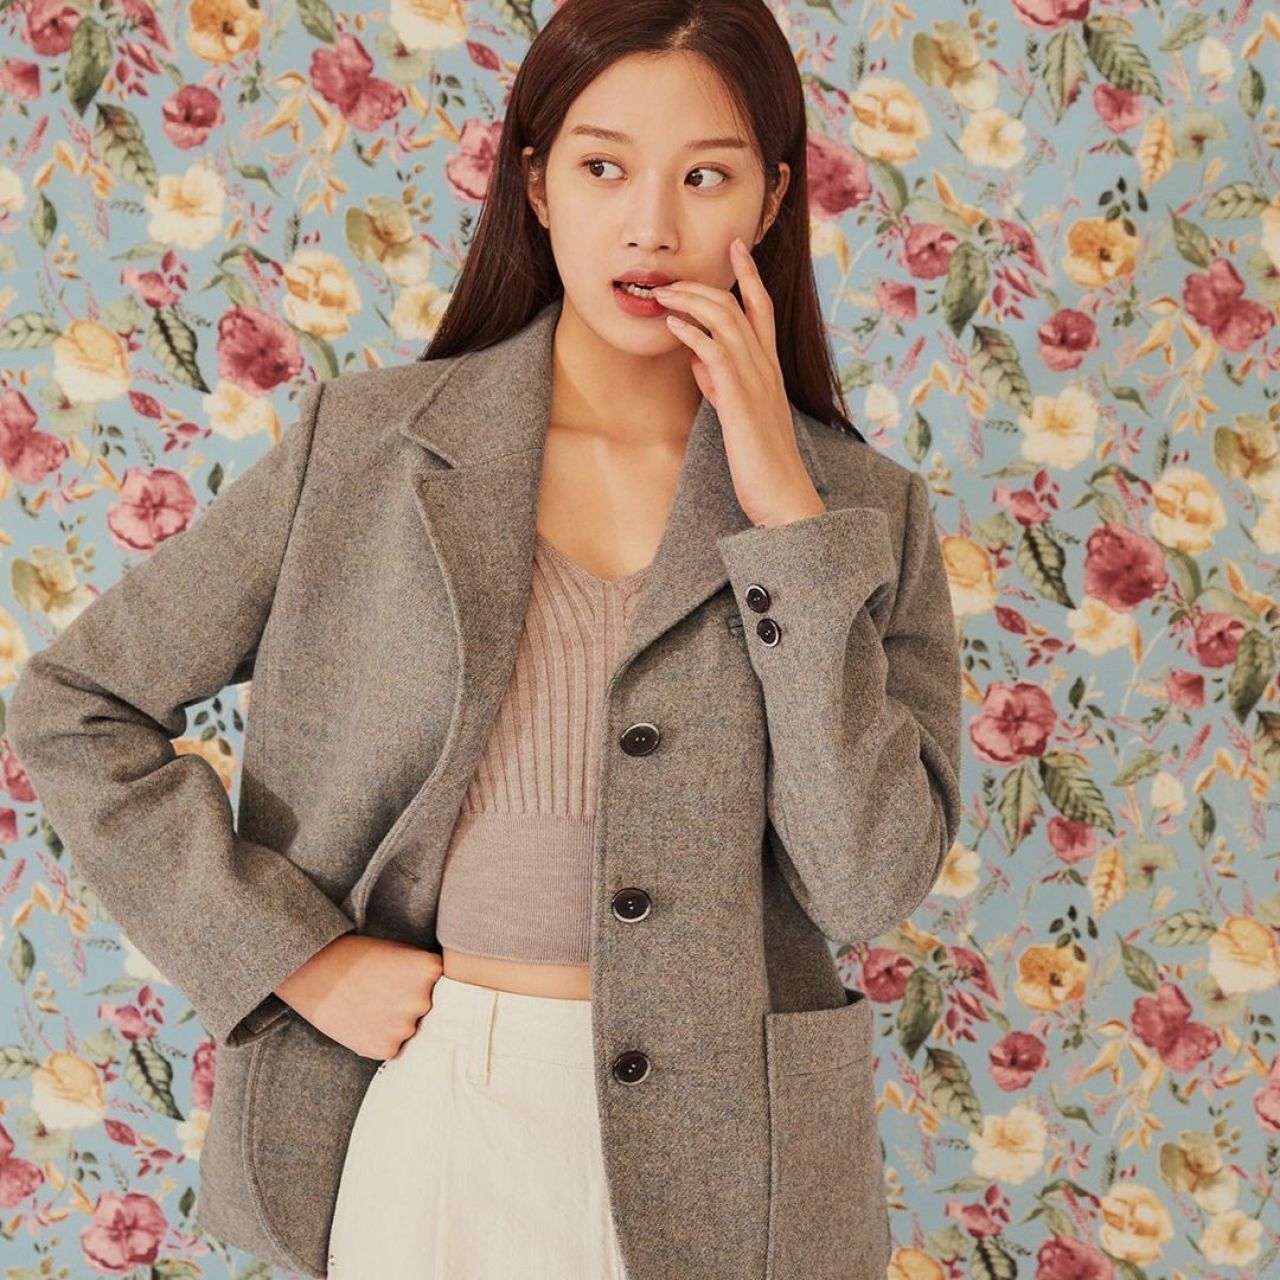 Moon Ga Young for Vogue Korea